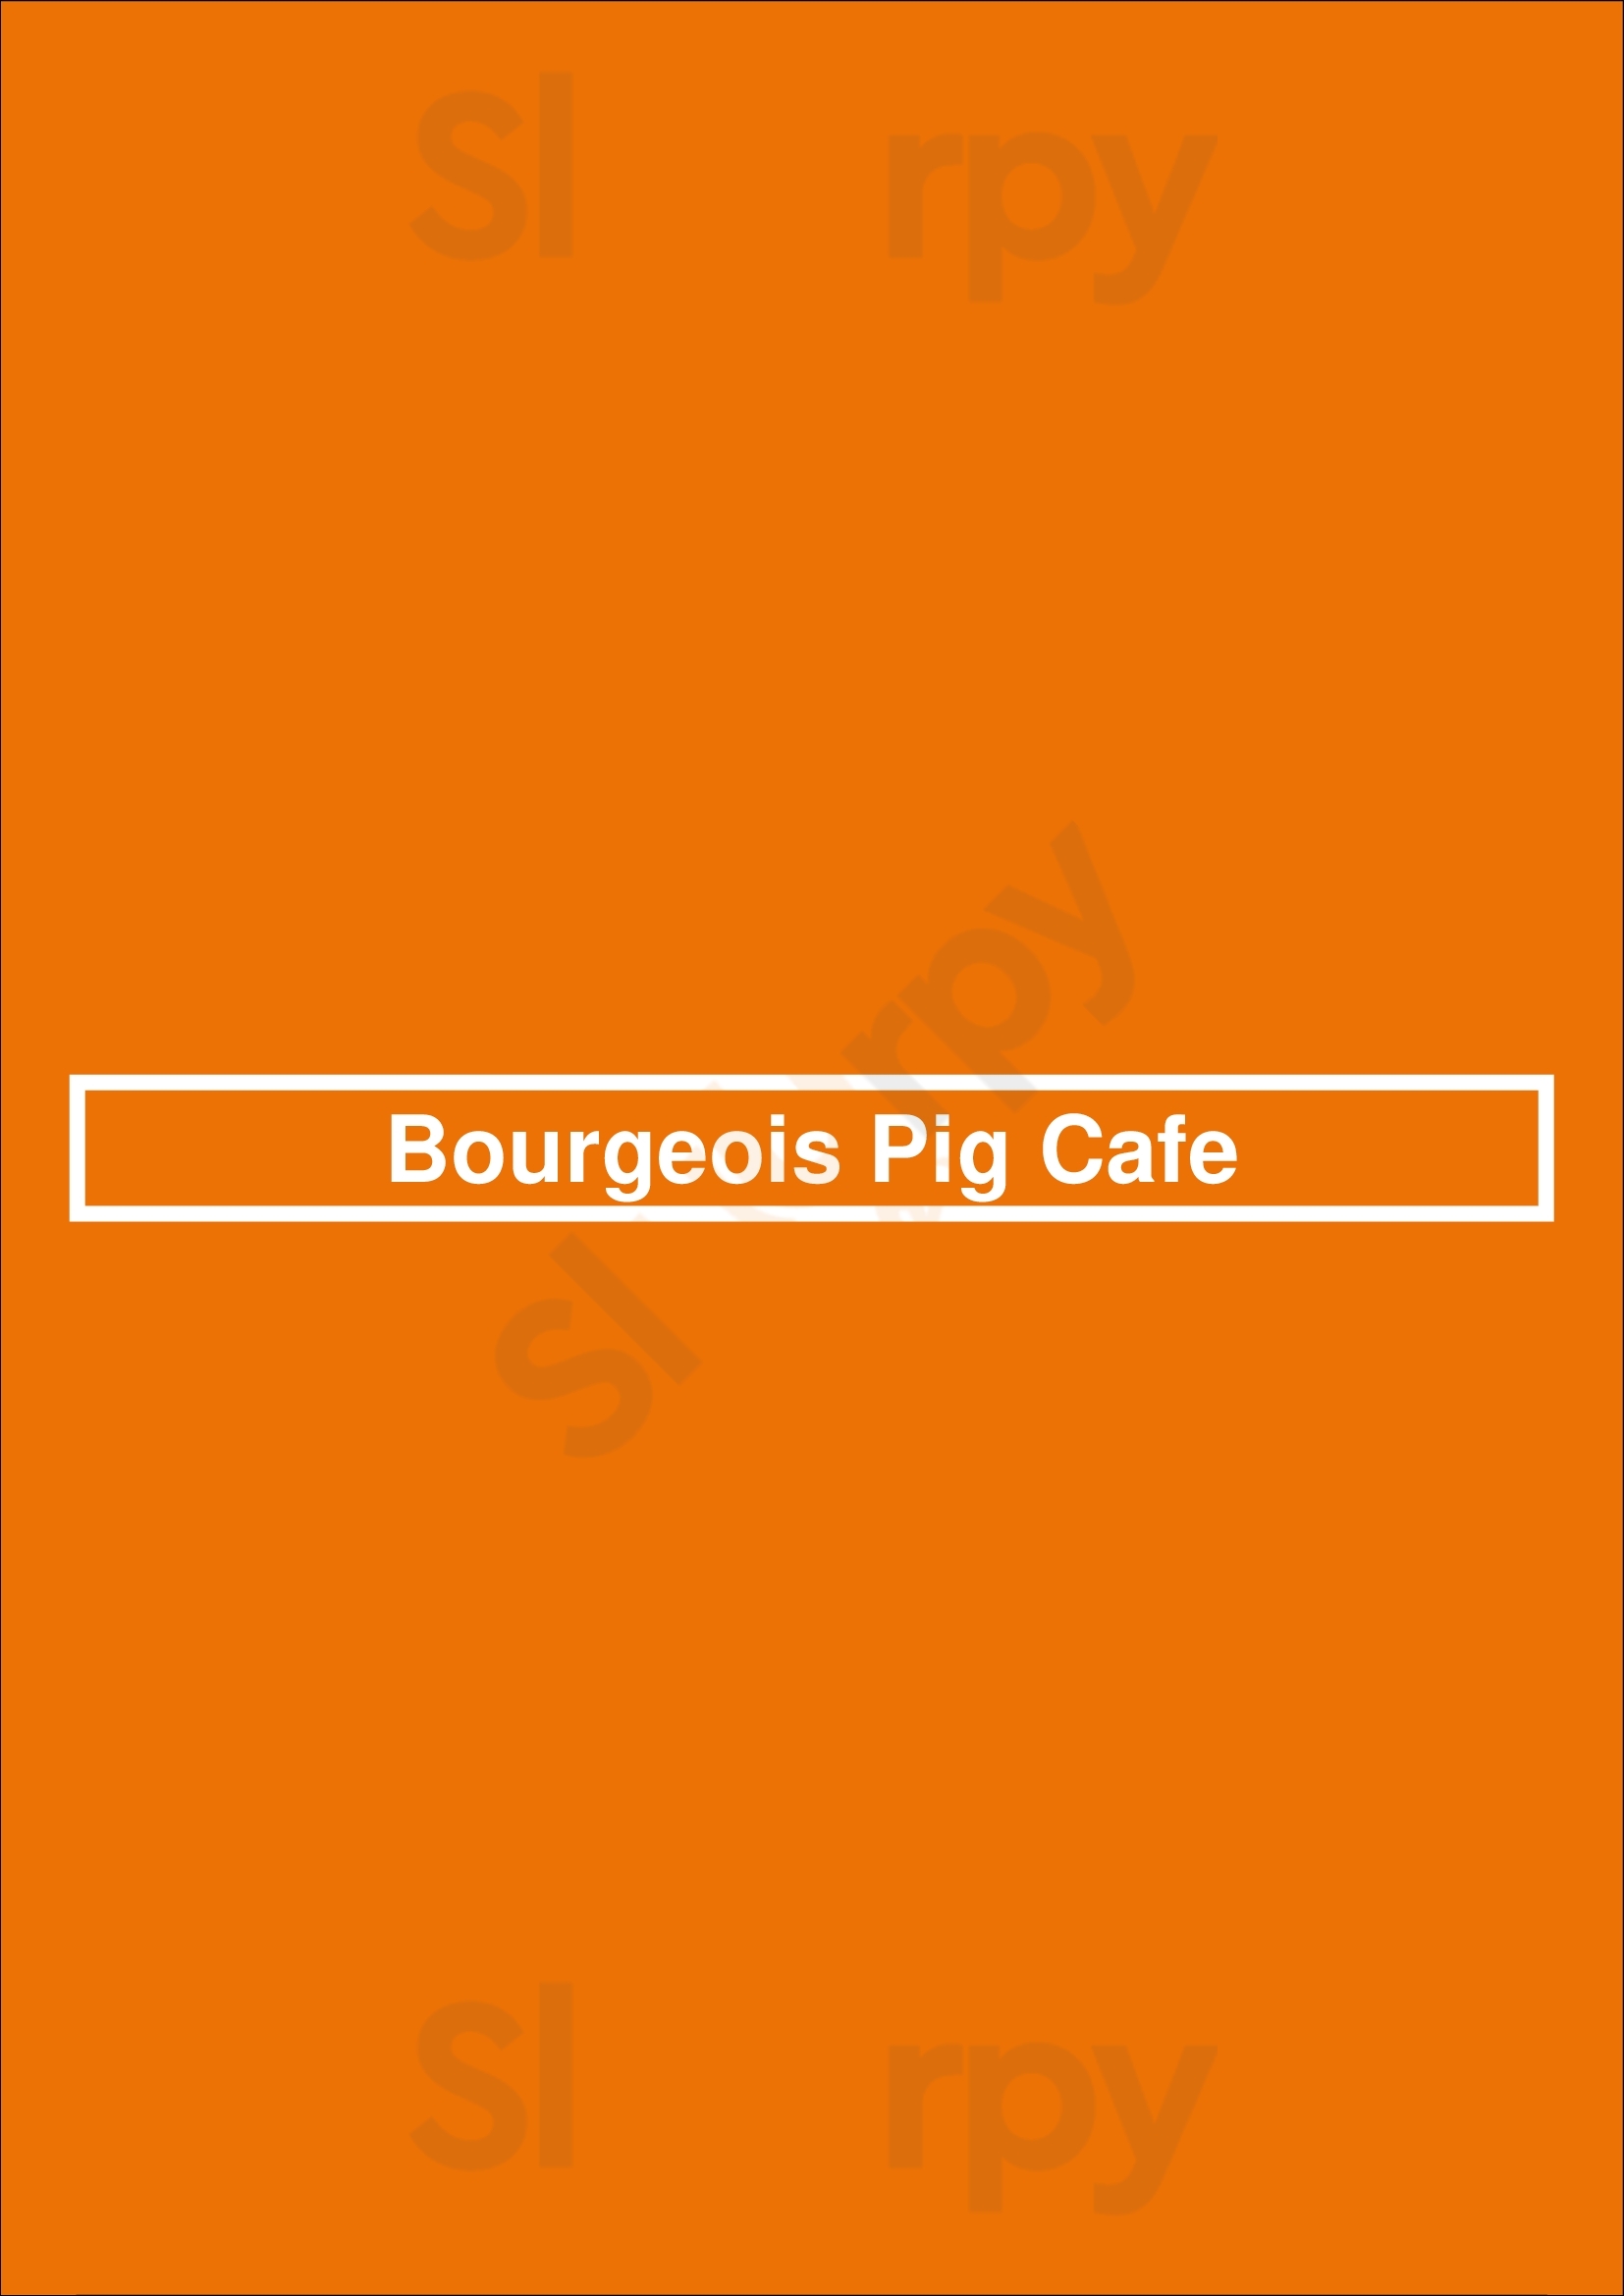 Bourgeois Pig Cafe Chicago Menu - 1